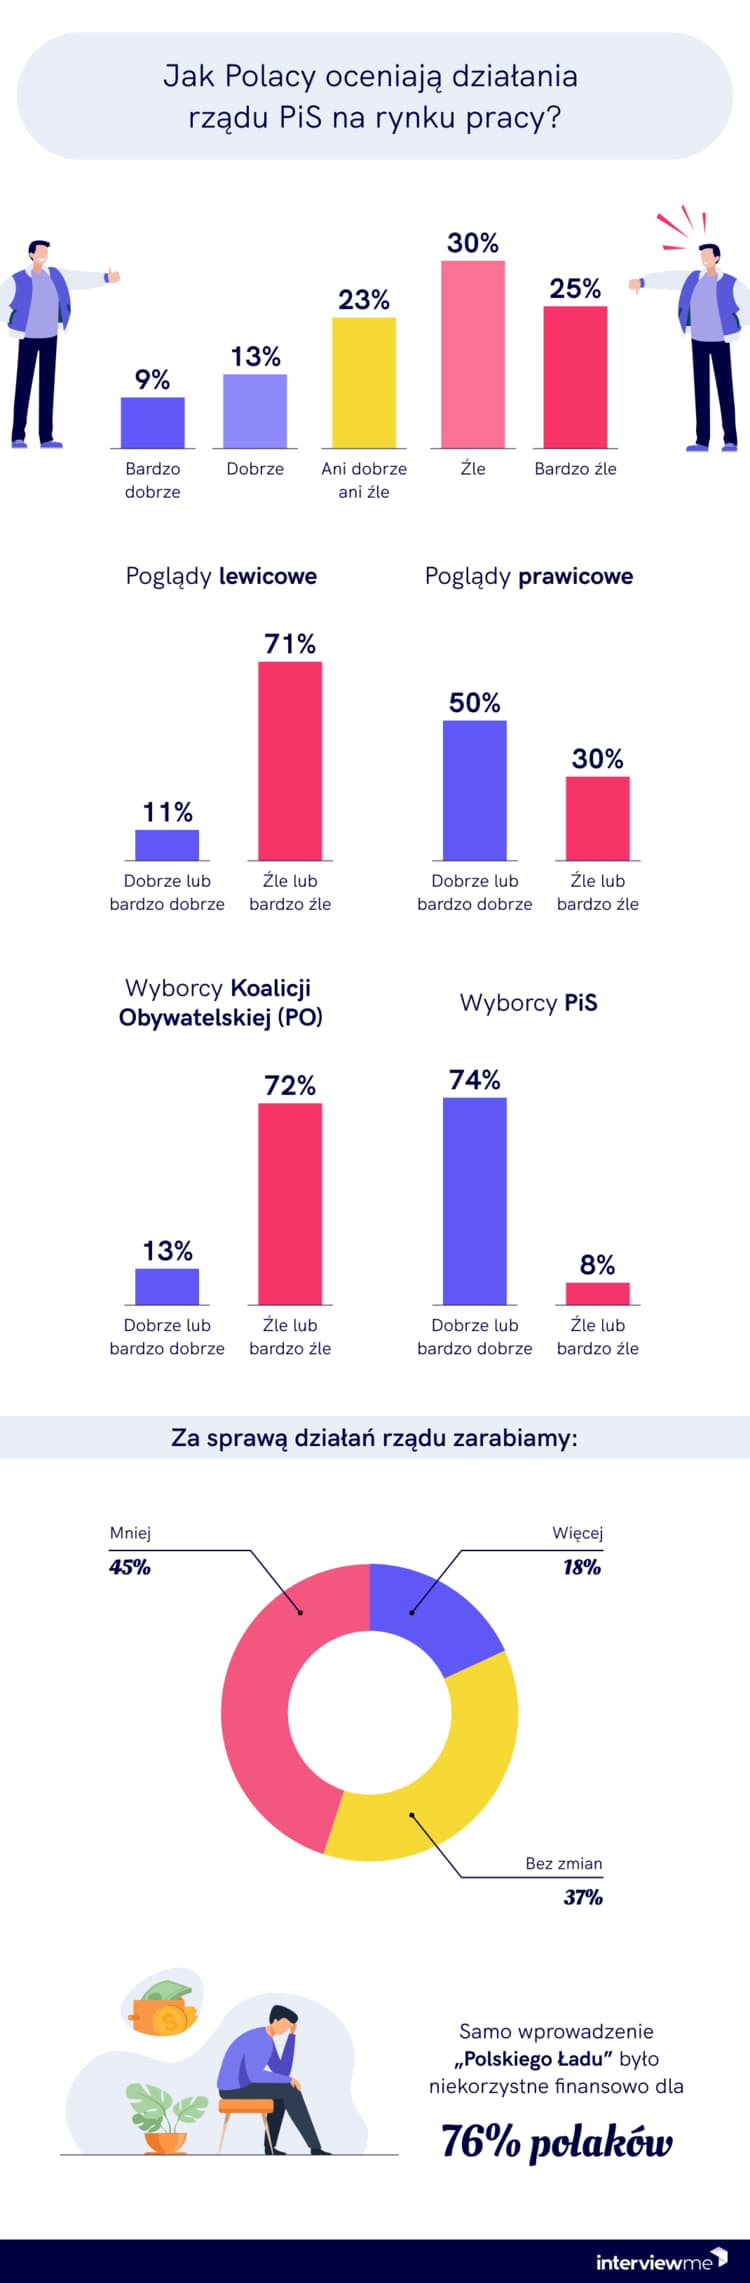 jak Polacy oceniają działania PiS na rynku pracy